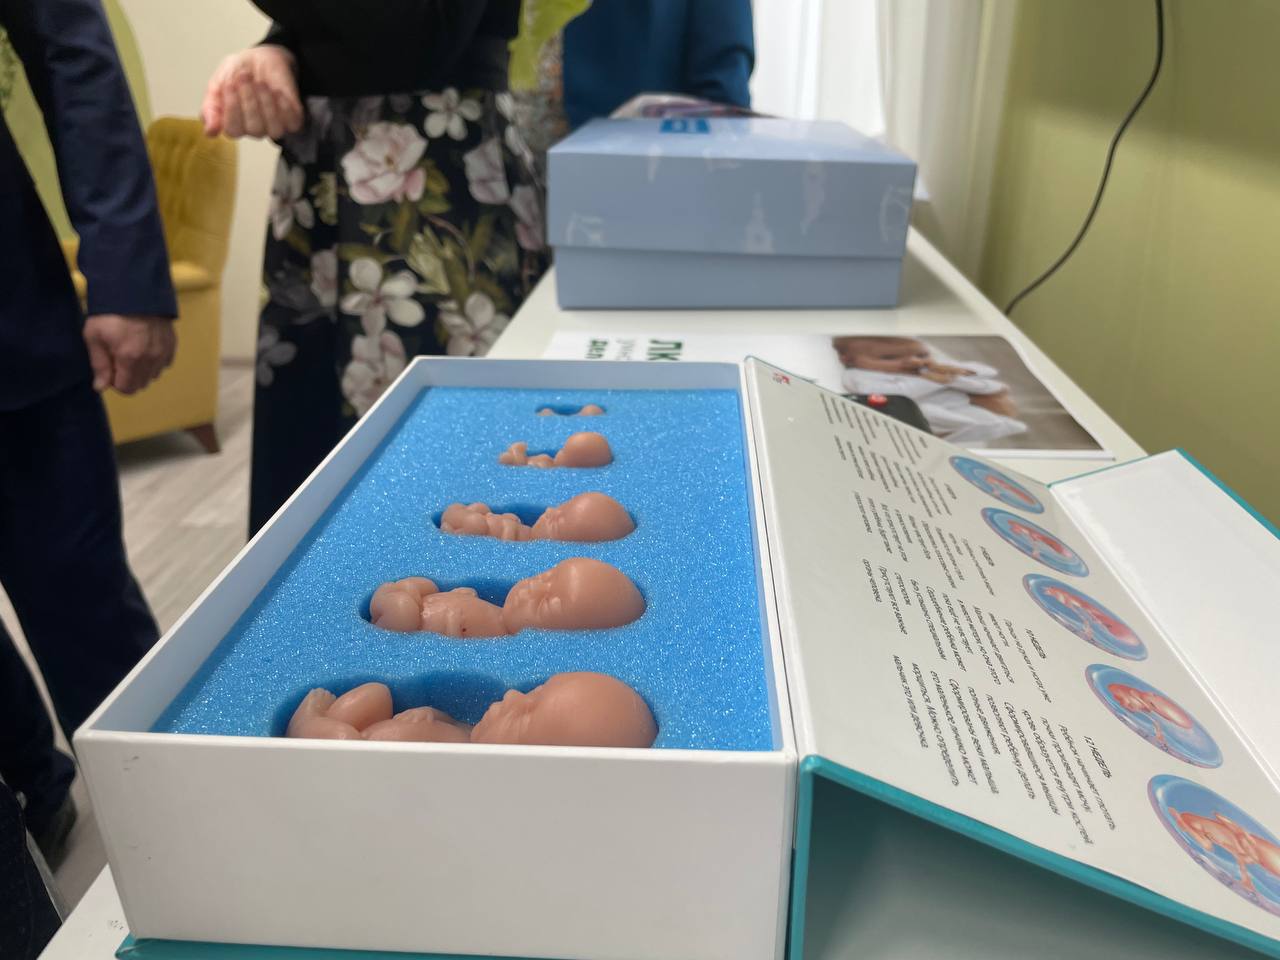 Кабинет медико-социальной помощи беременным появился в Ижевской городской поликлинике №10